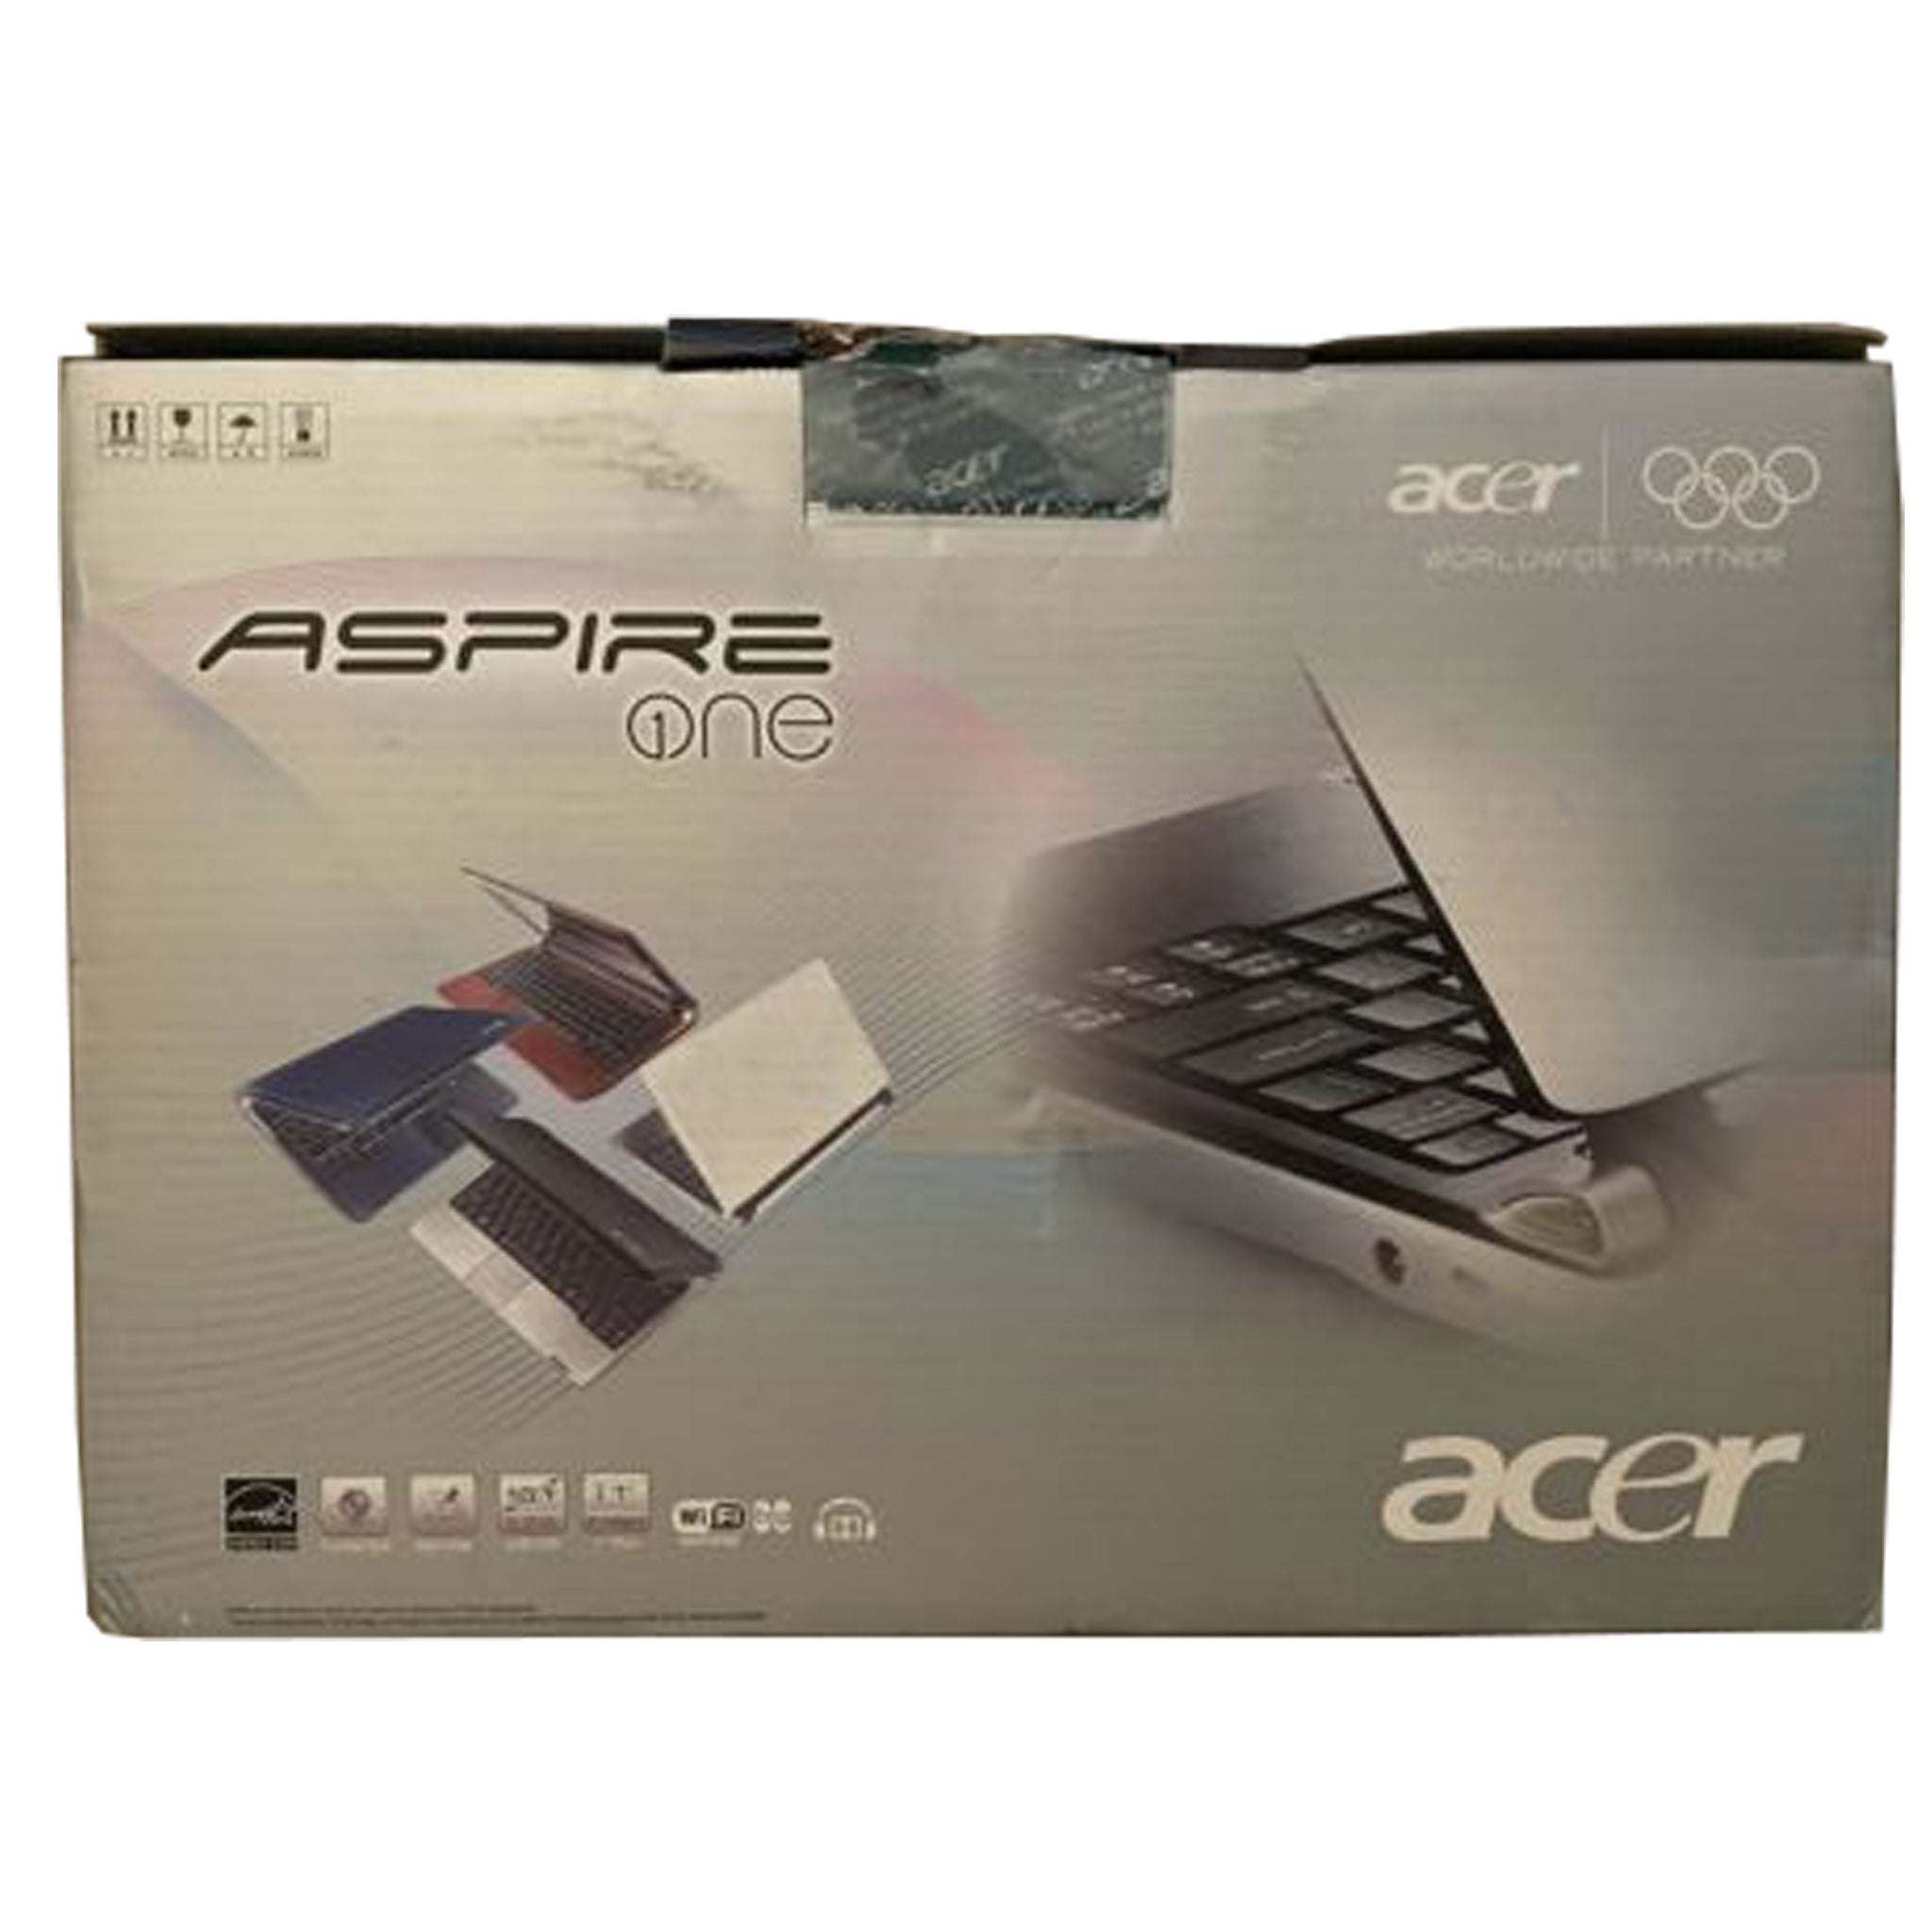 Acer Aspire One D250-1842 KAV60  Brand new in box